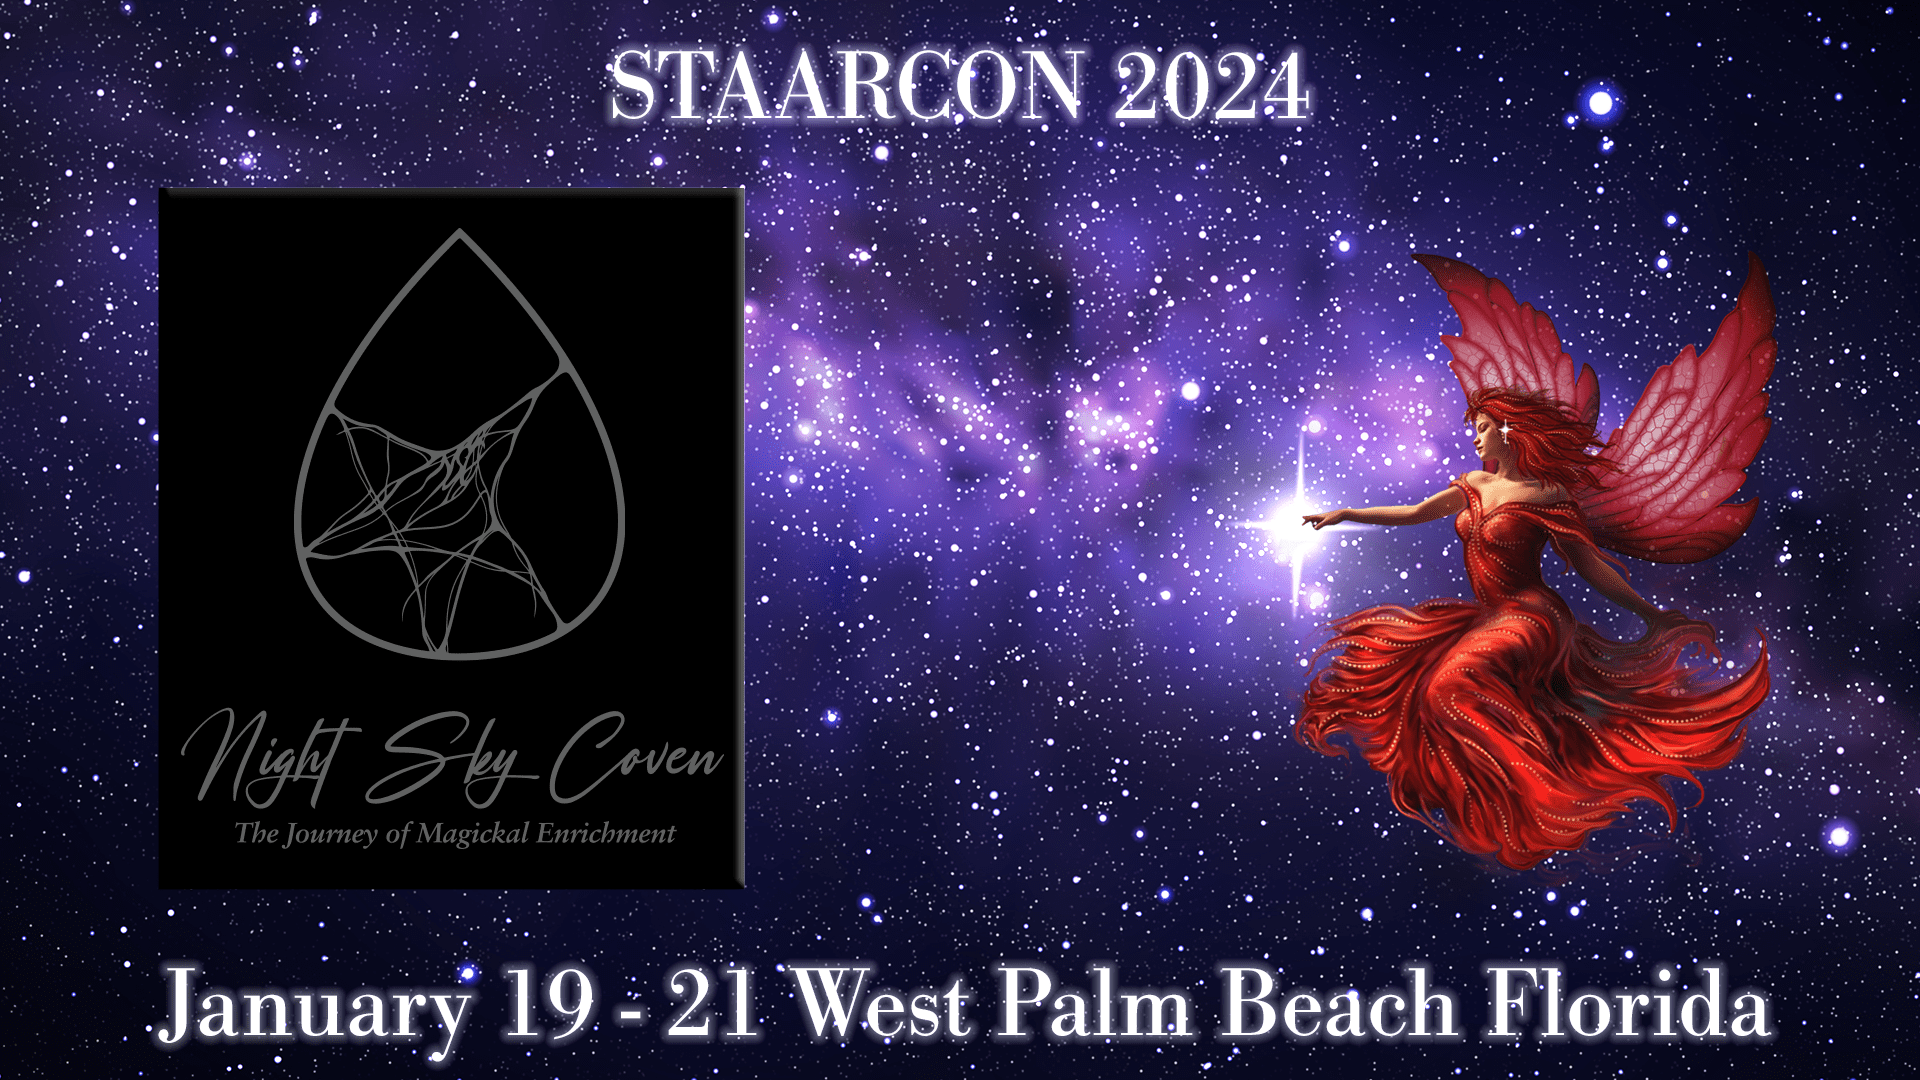 StaarCon sponsor Night Sky Coven.